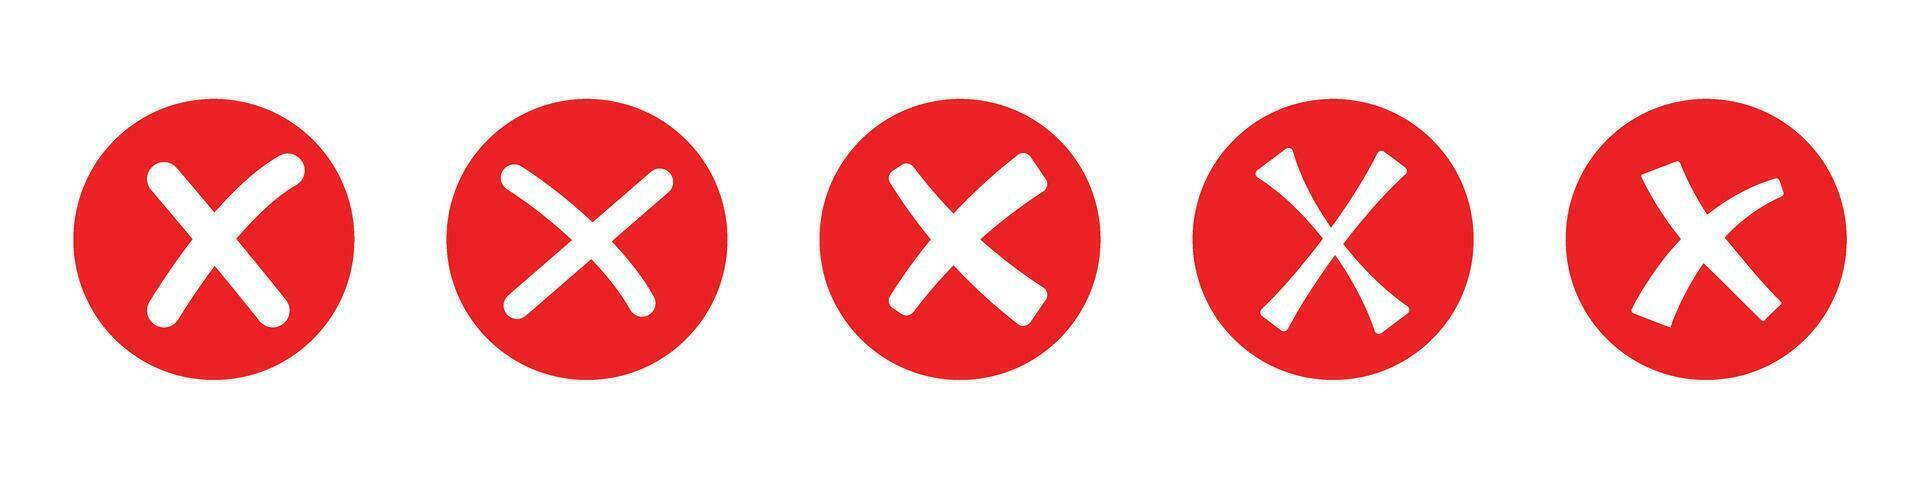 vermelho Cruz marca ícone falso vetor